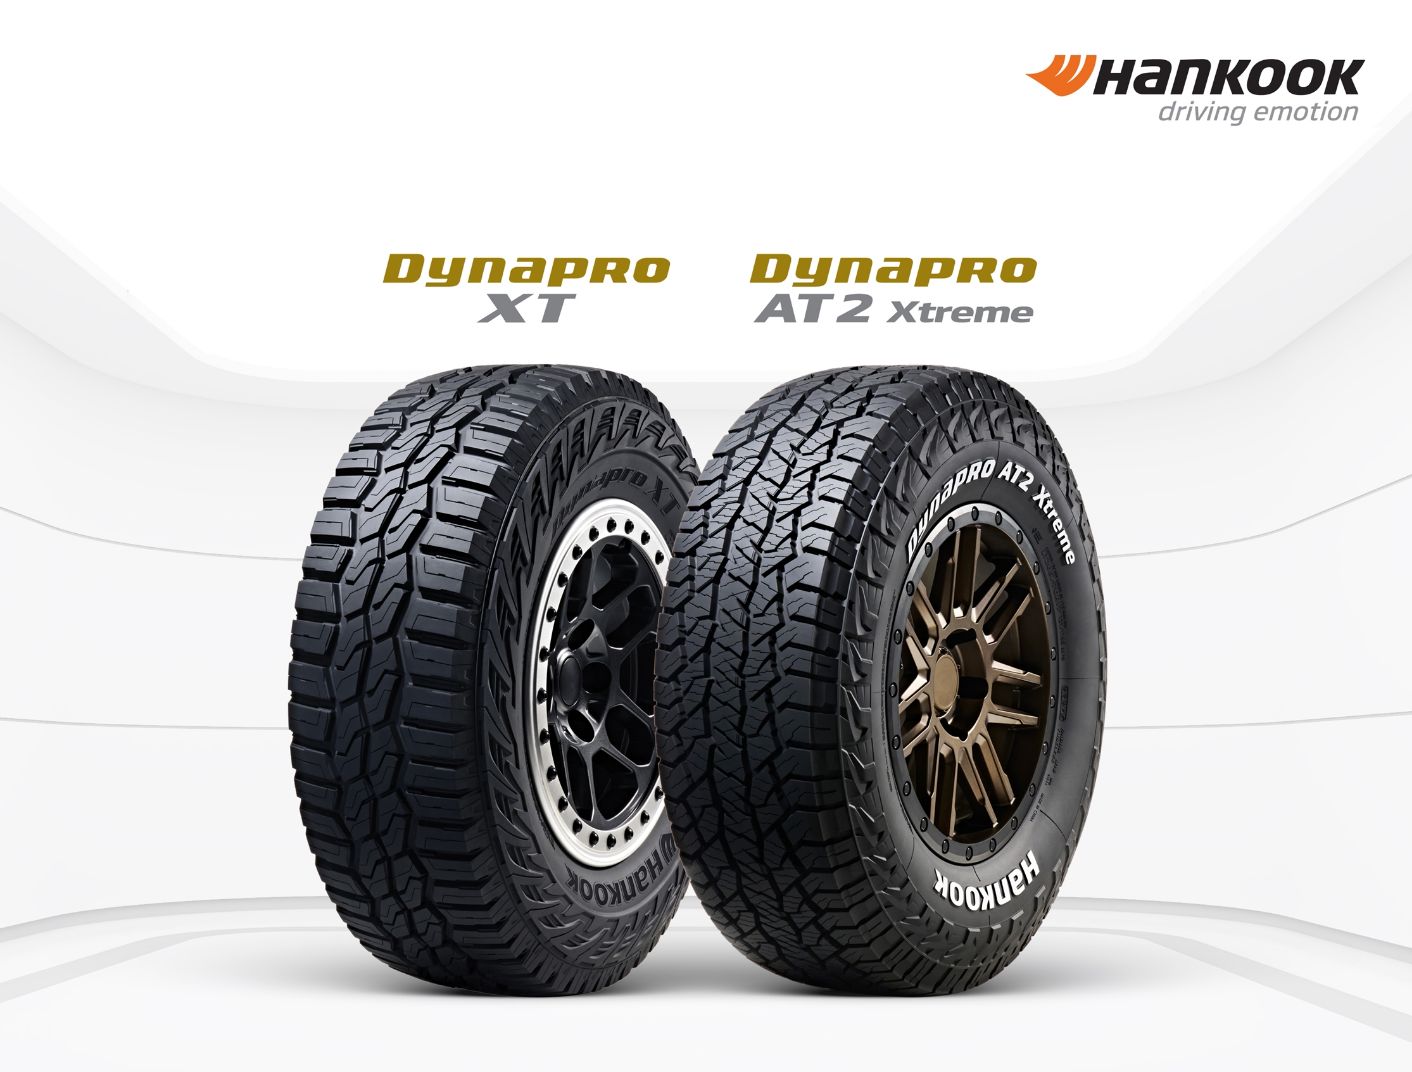 Jagonya Off-Road, Ban SUV/LT Hankook Tire Raih Good Design® Award